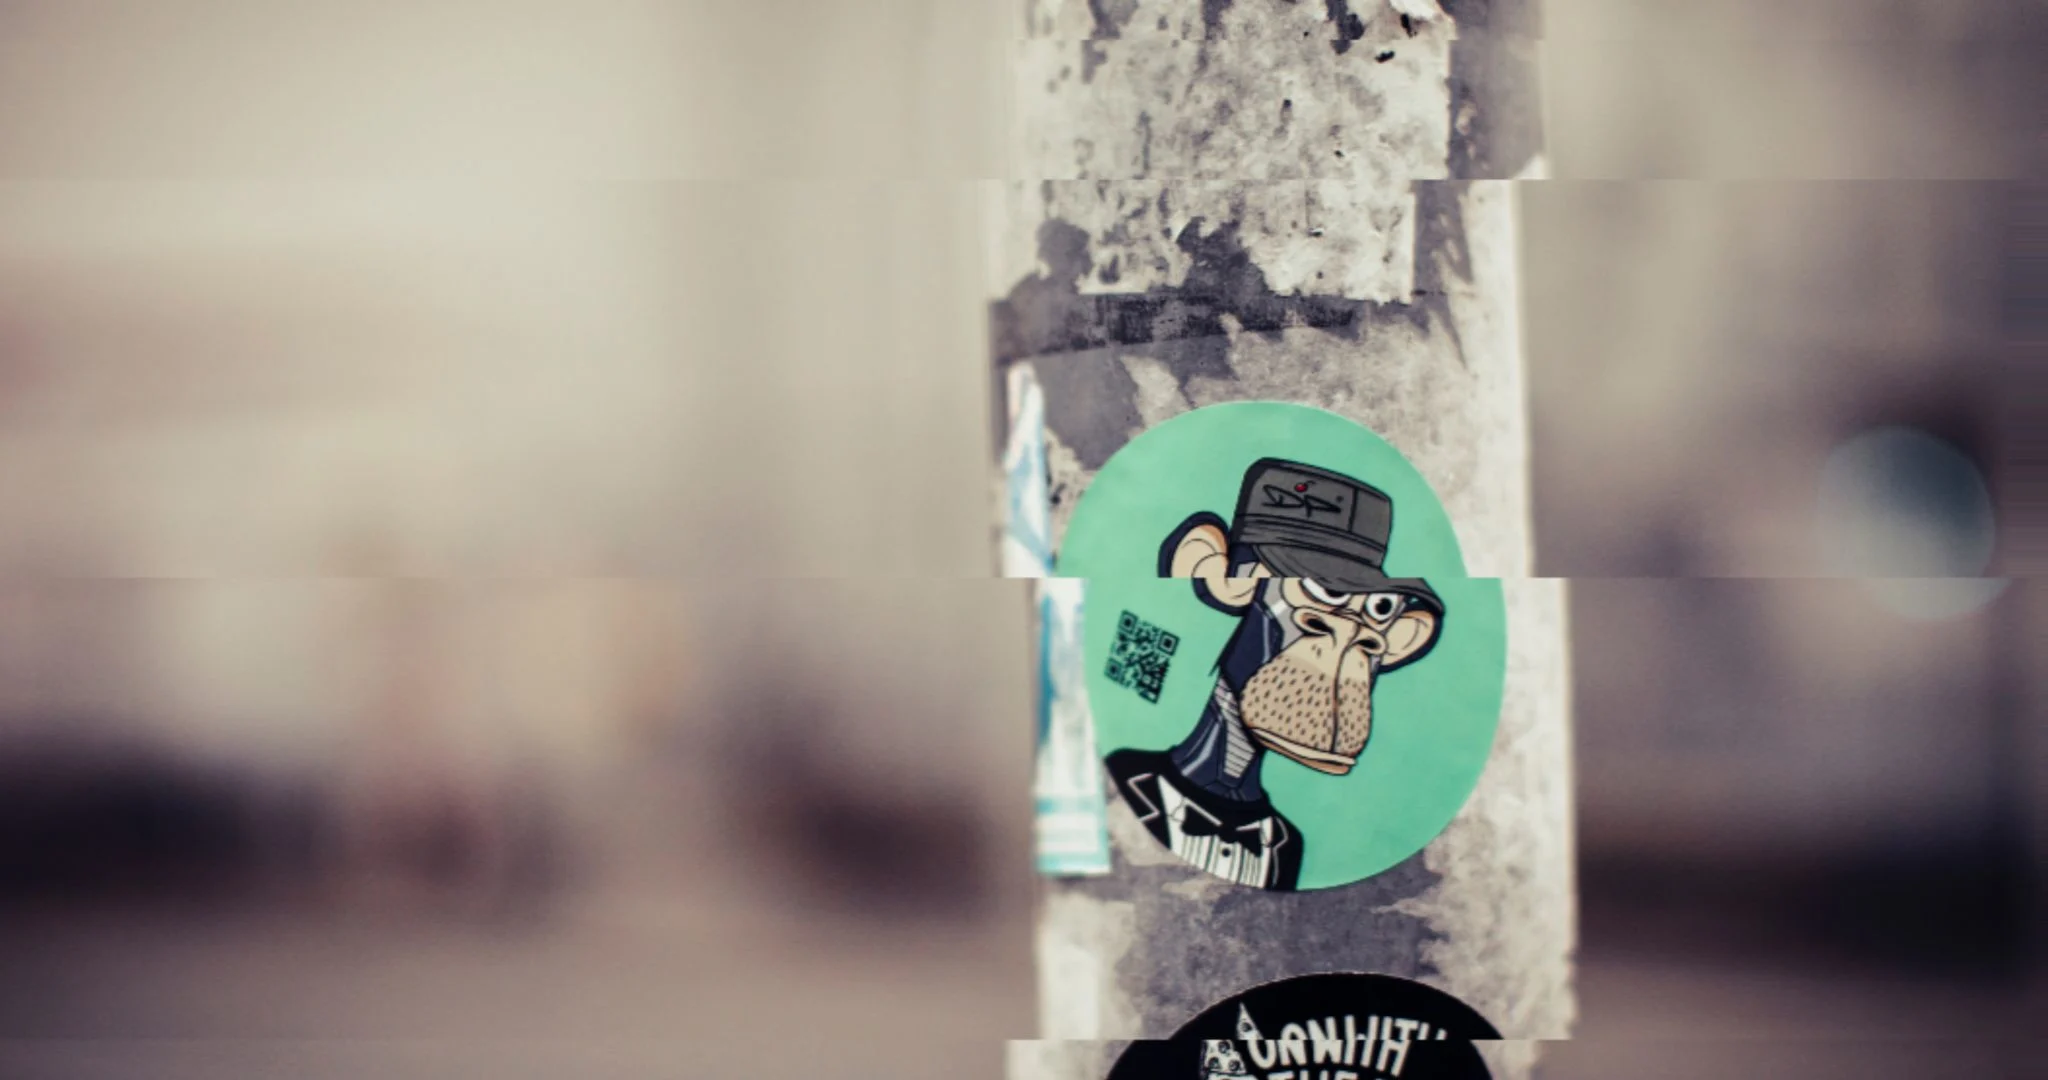 A BAYC NFT print on a sticker on a pole in a city. Source: Markus Spiske / Unsplash